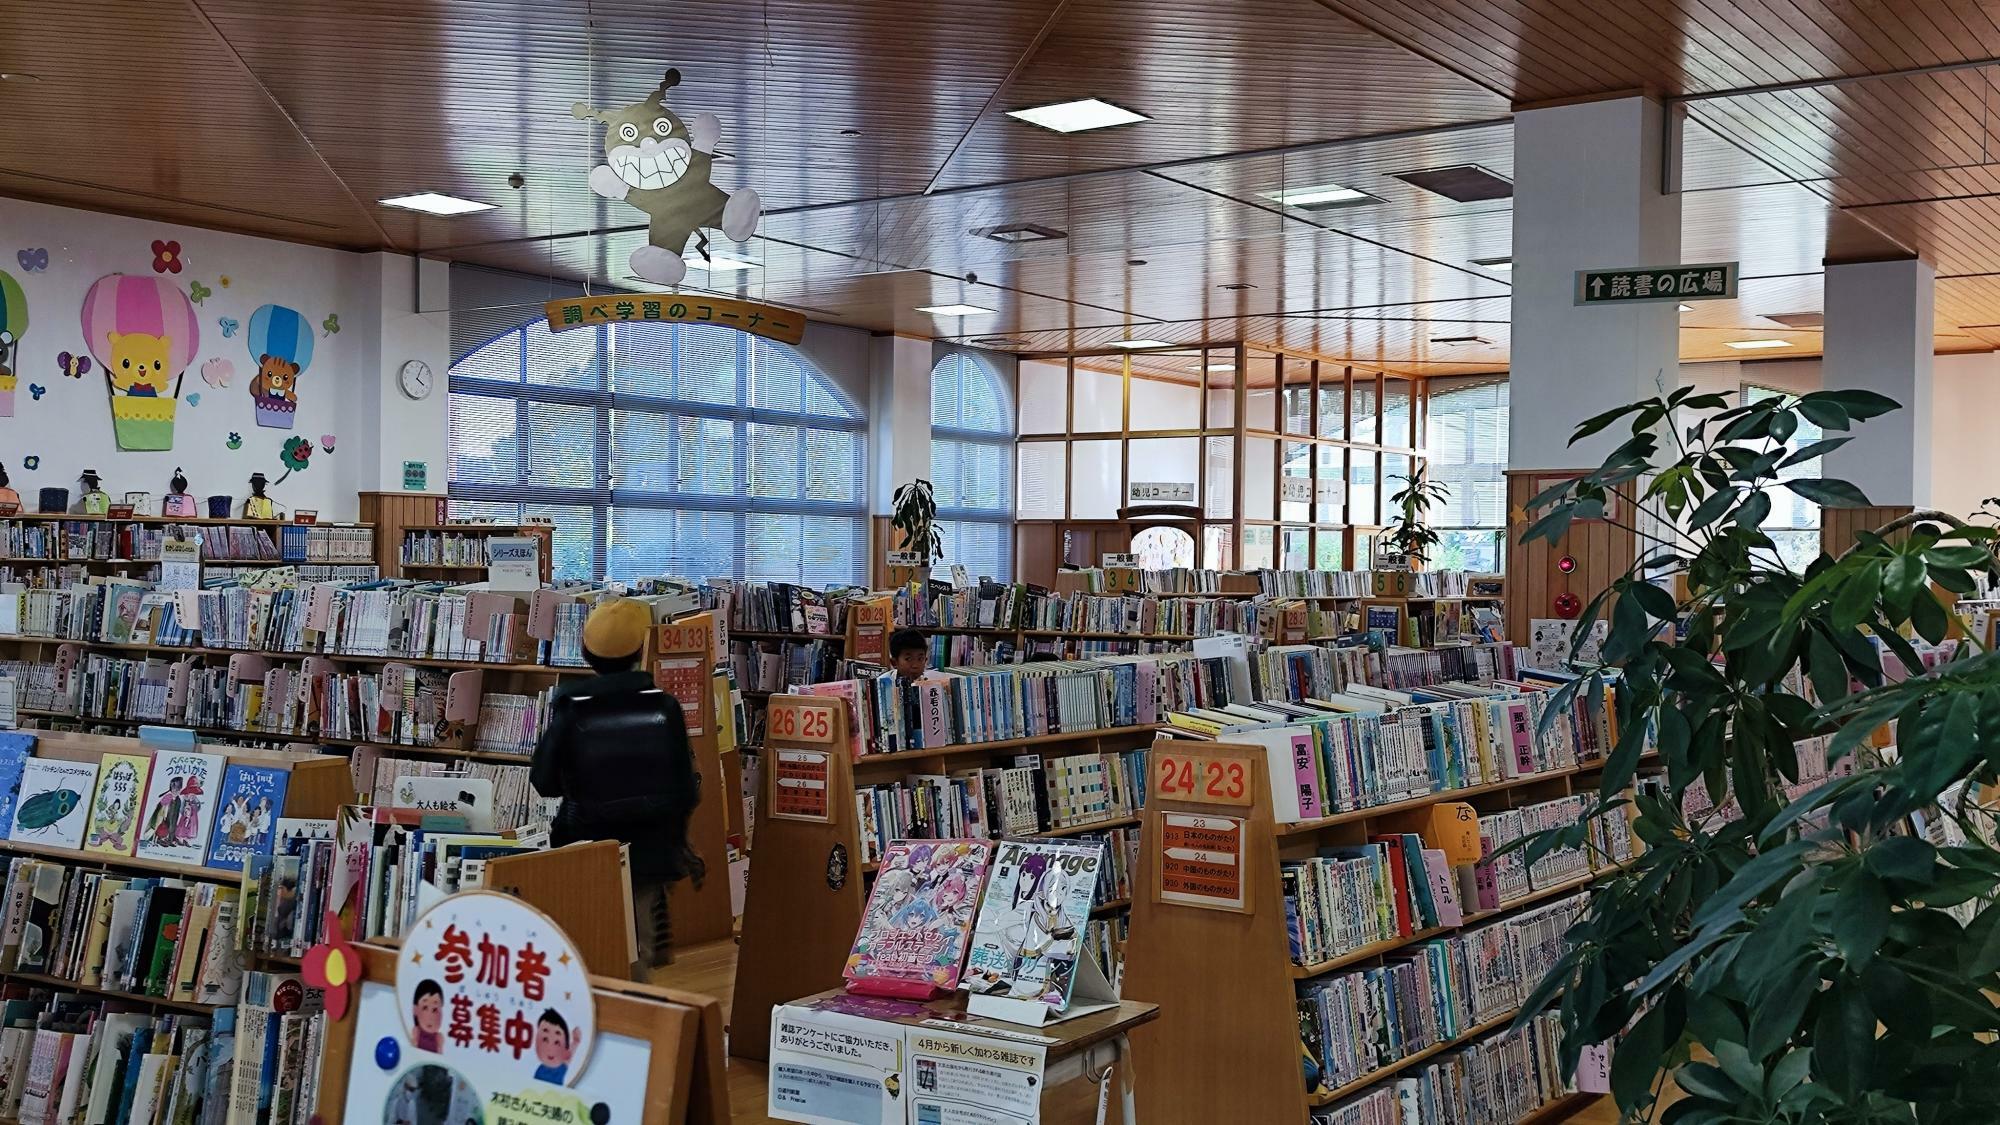 館内は一般書籍をはじめ、絵本や新聞、雑誌も置いています